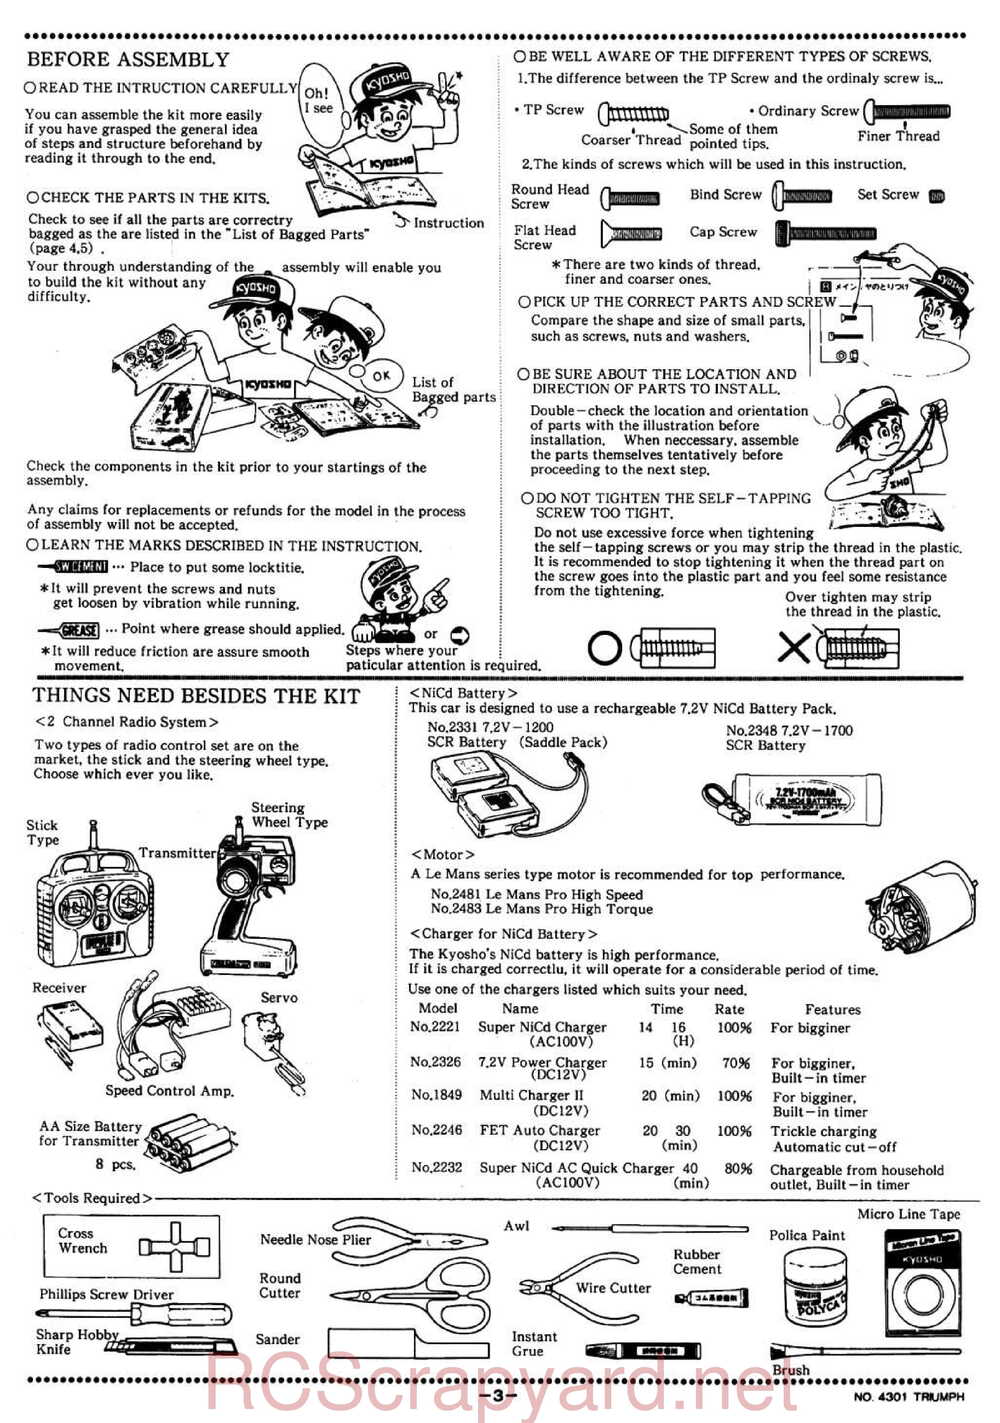 Kyosho - 4301 - Triumph - Manual - Page 03